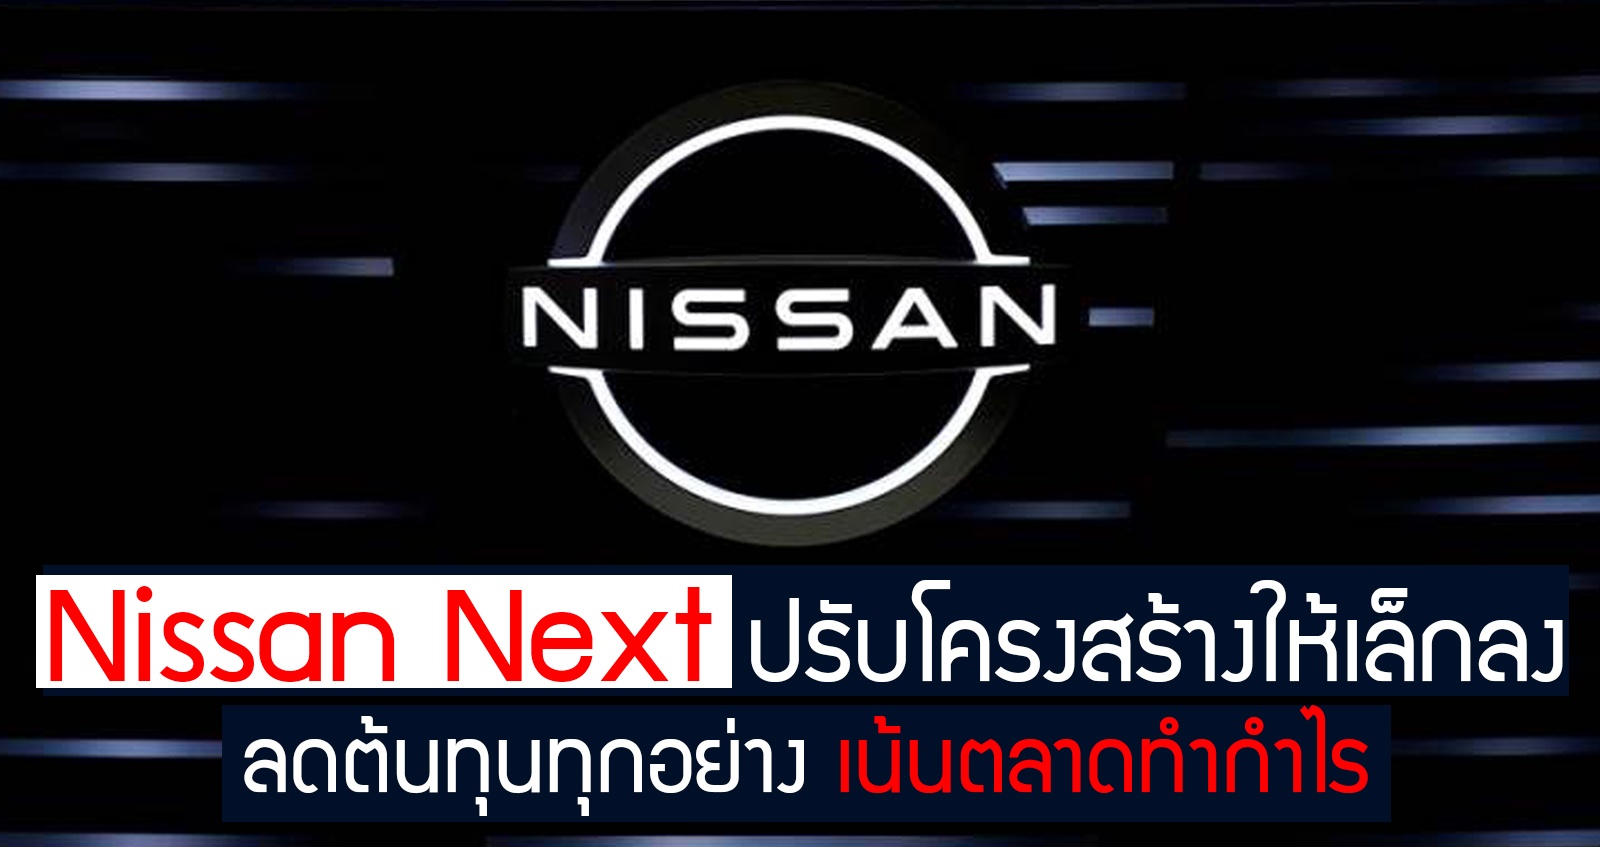 Nissan Next ลดต้นทุน ปรับโครงสร้างใหม่ เน้นตลาดทำกำไร